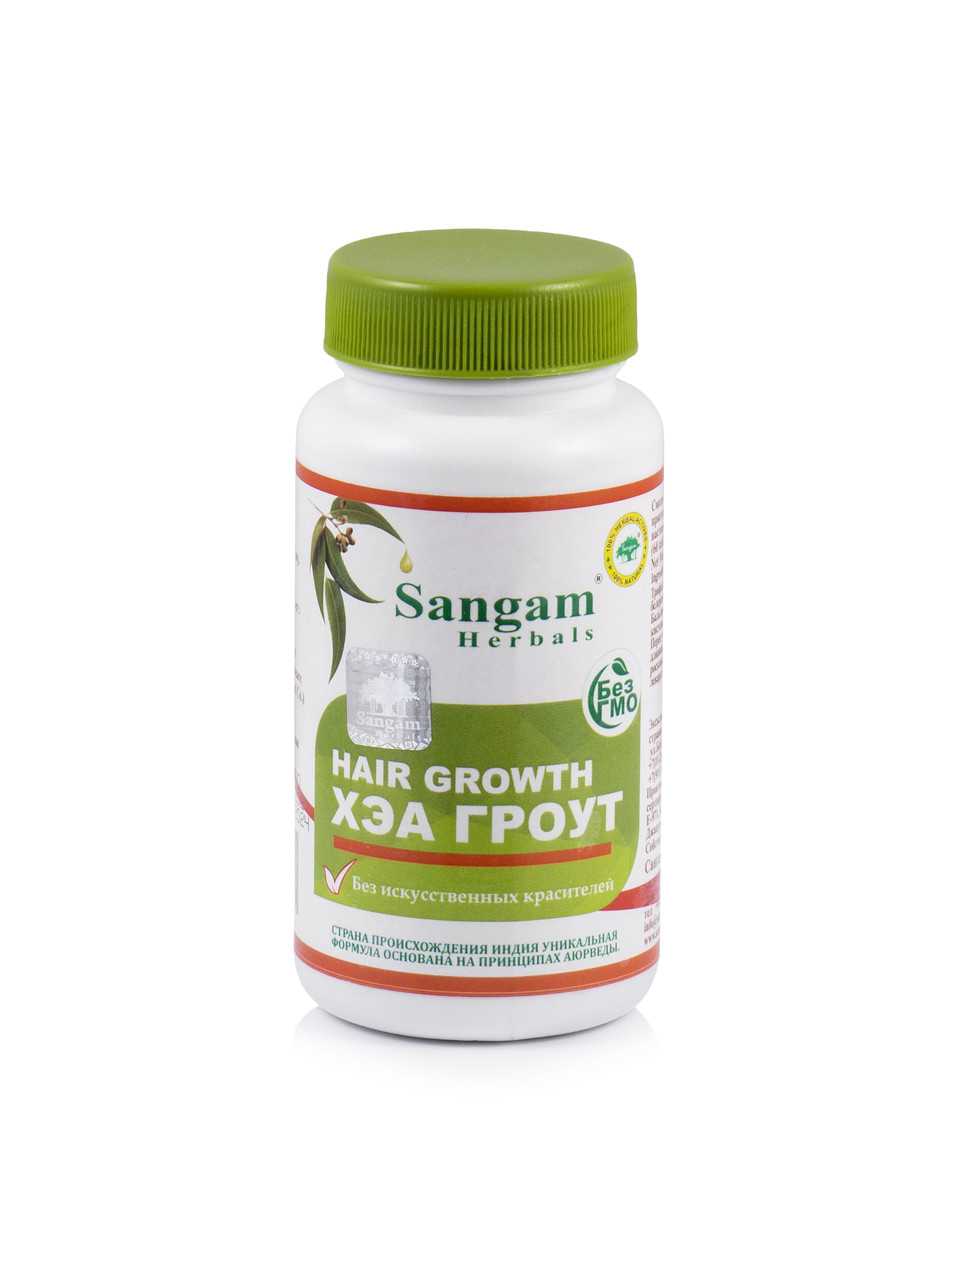 Хэа Гроут таблетки, 750 мг, Sangam Herbals, способствует укреплению и росту волос